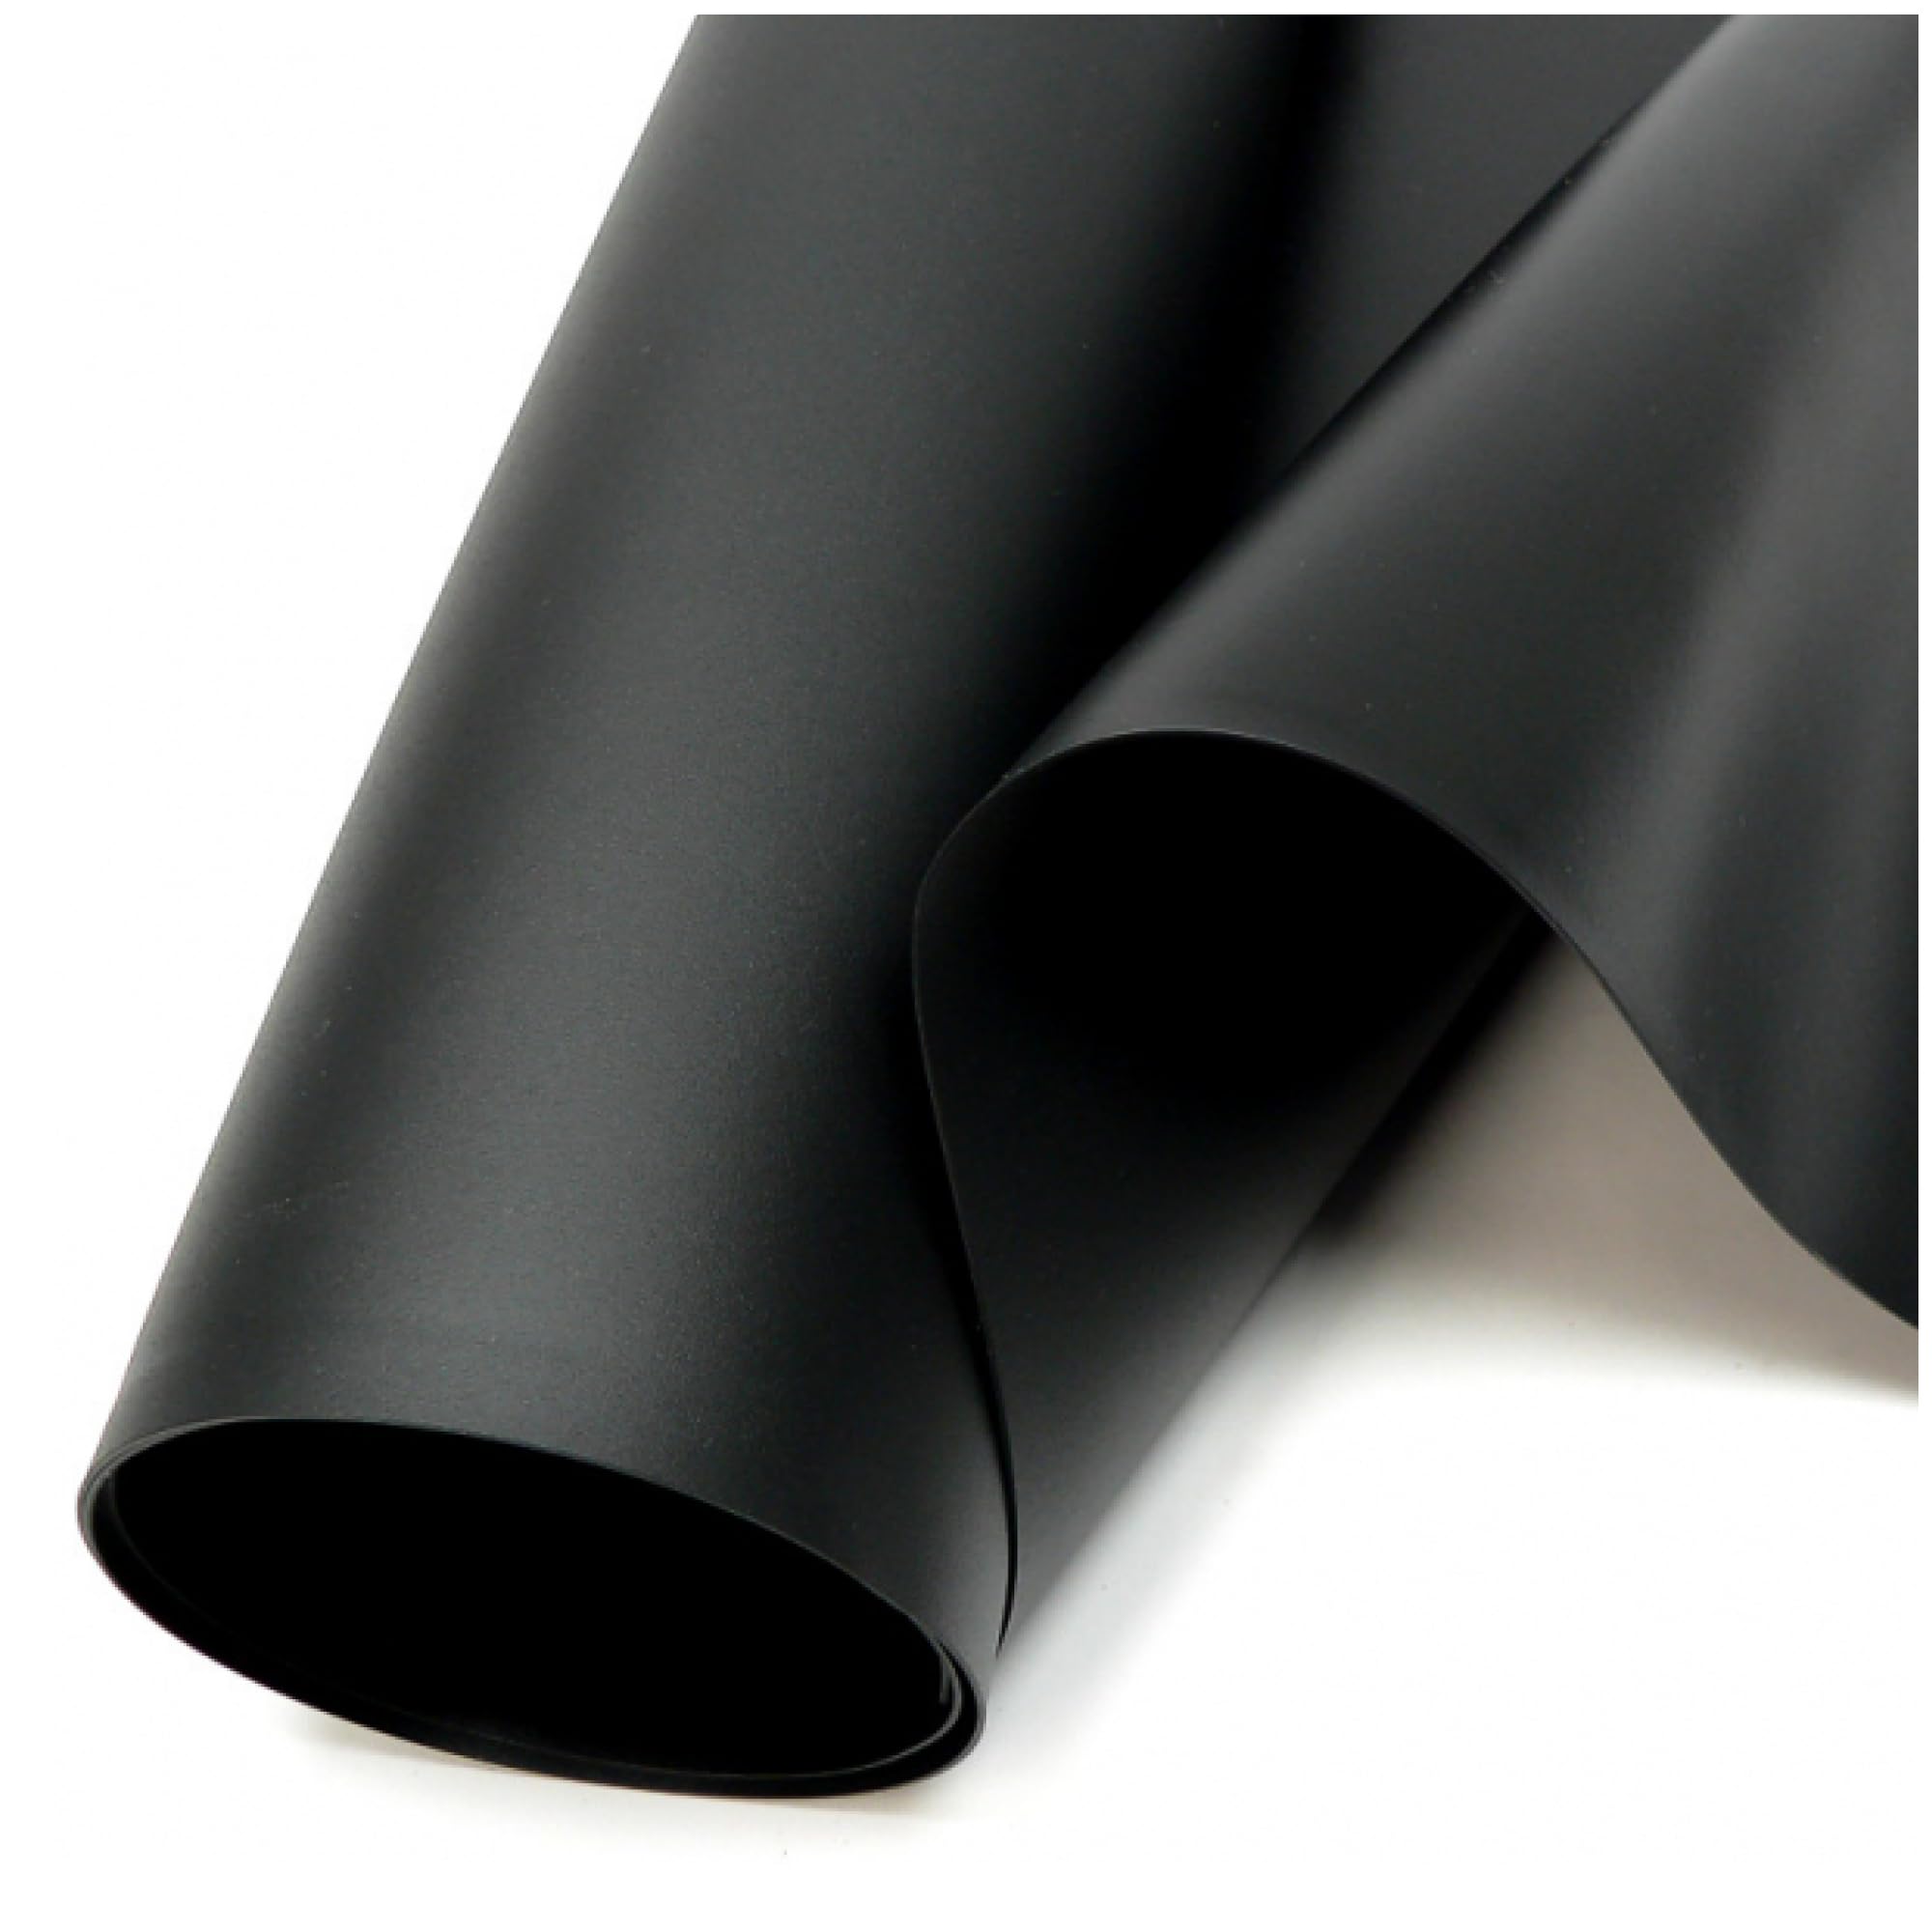 SIKA Premium PVC Teichfolie schwarz (PVC Stärke 0,5 mm, 4 m x 10 m) - Verschiedene Stärken & Größen/PVC Folie schwarz auch geeignet als Hochbeet Folie wasserdicht